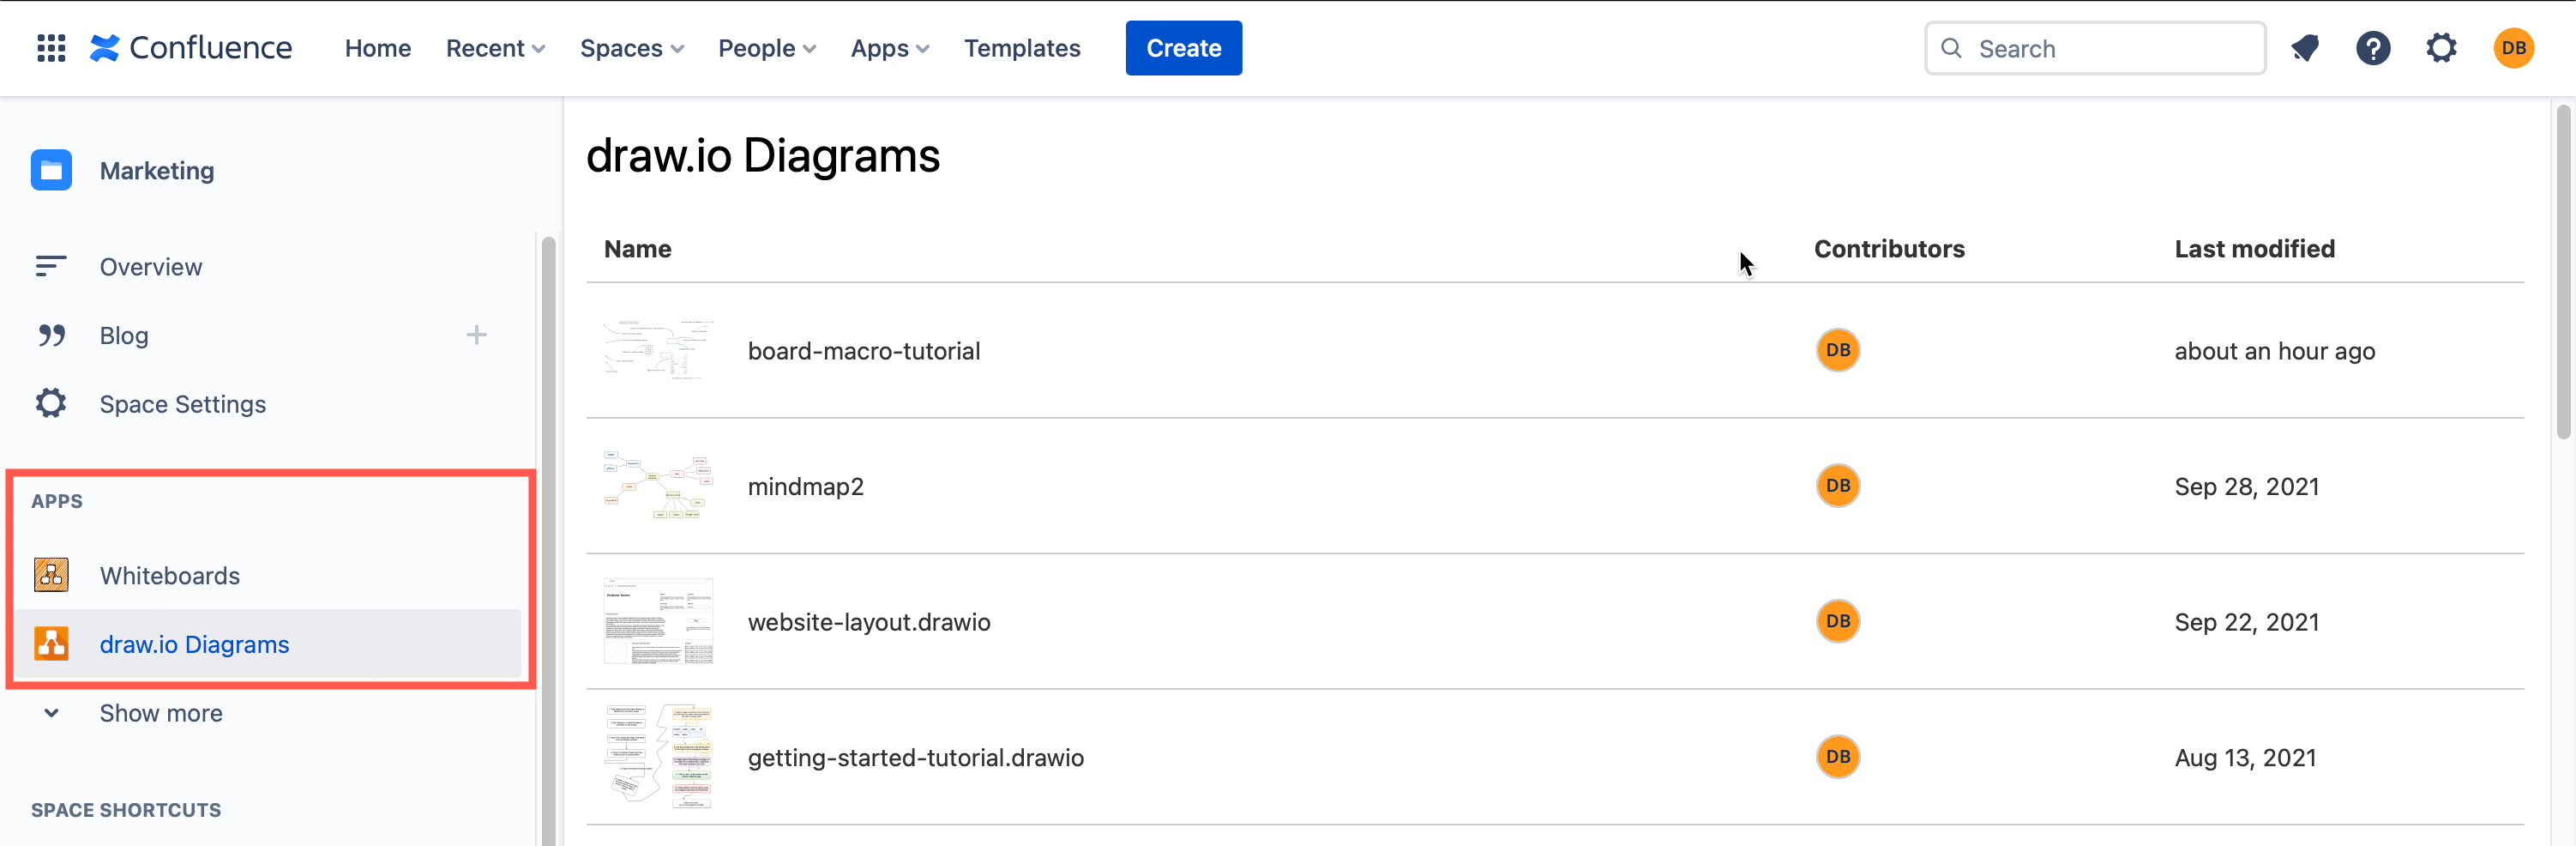 在 Confluence Cloud 实例中查看所有 draw.io Diagrams 和 draw.io Boards